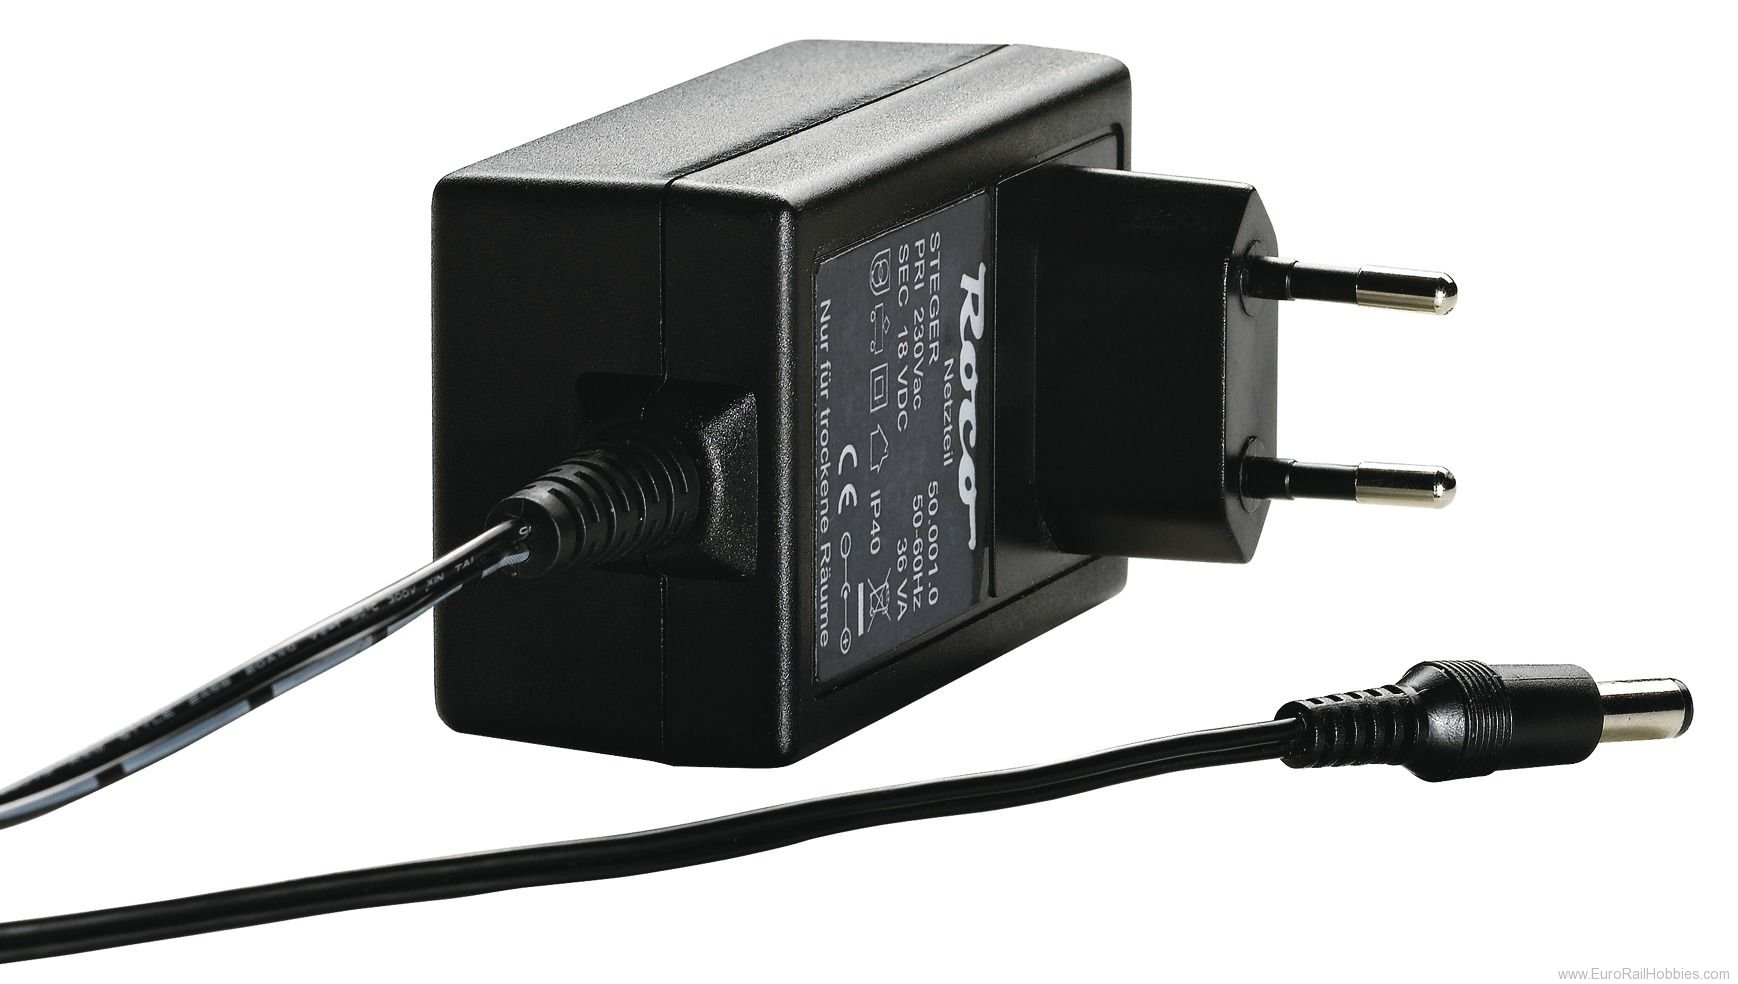 Roco 10850 Switching power supply 36 Watts, 230V 